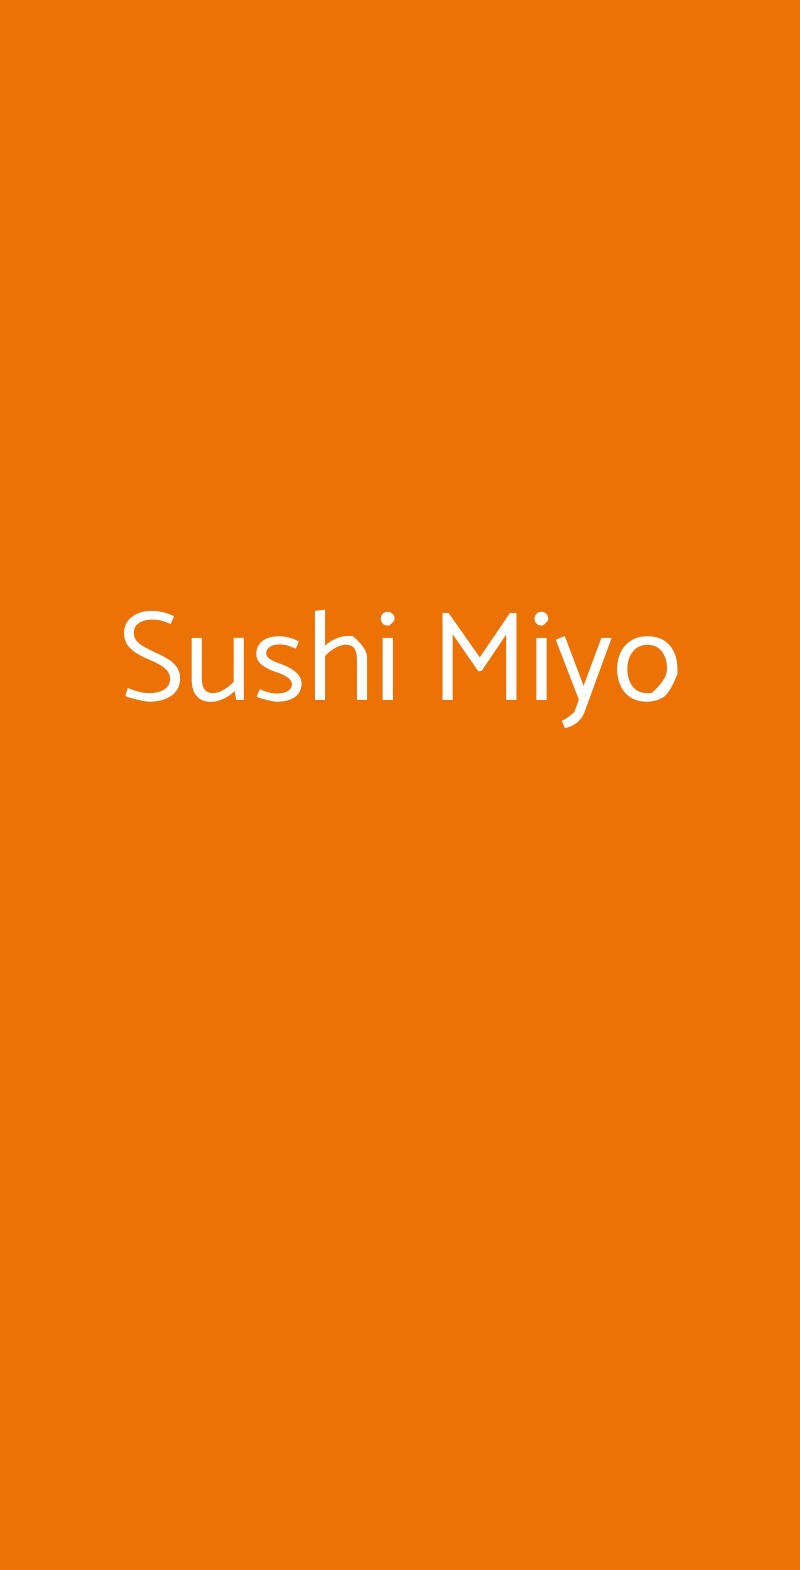 Sushi Miyo Padova menù 1 pagina